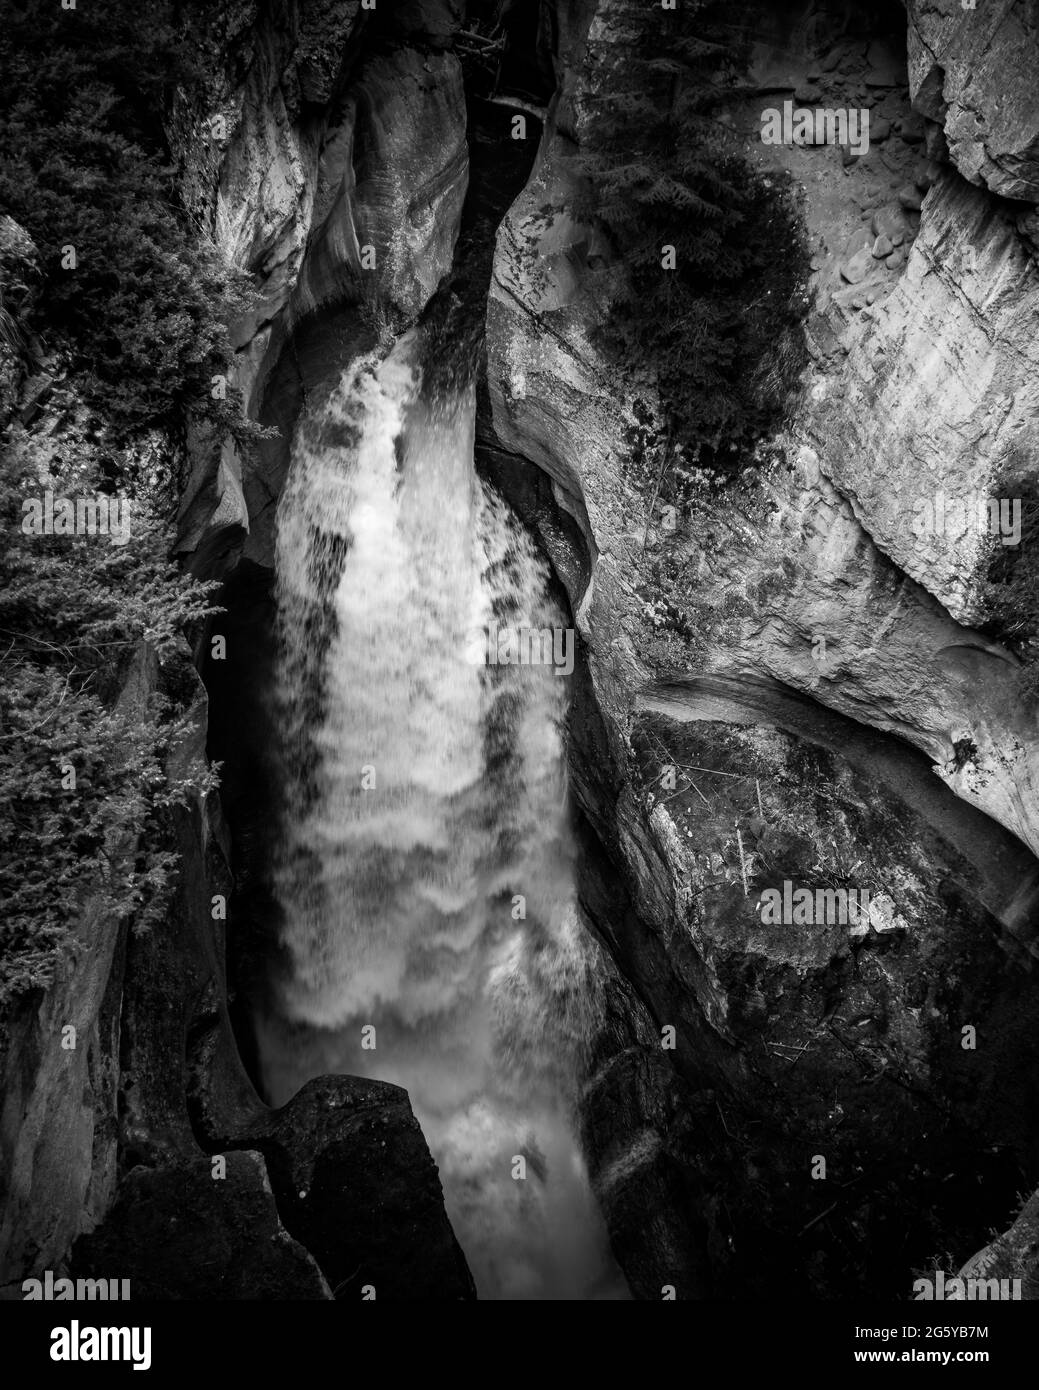 Noir et blanc photo d'une chute d'eau de la rivière Maligne dans le canyon Maligne au premier pont du parc national Jasper des montagnes Rocheuses, Canada Banque D'Images